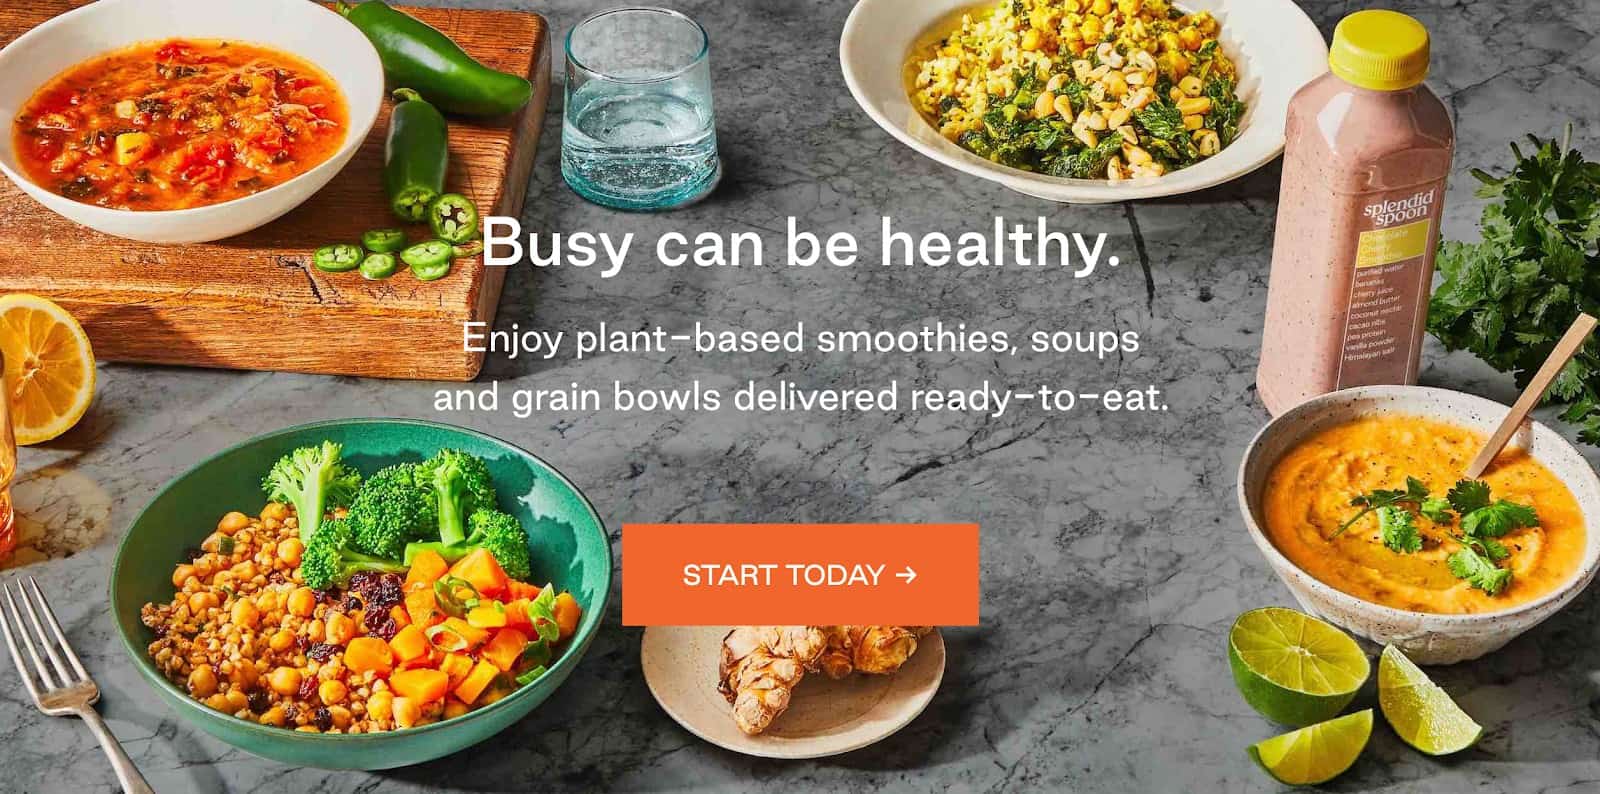 Splendid Spoon website | Ready-to-eat healthy meals